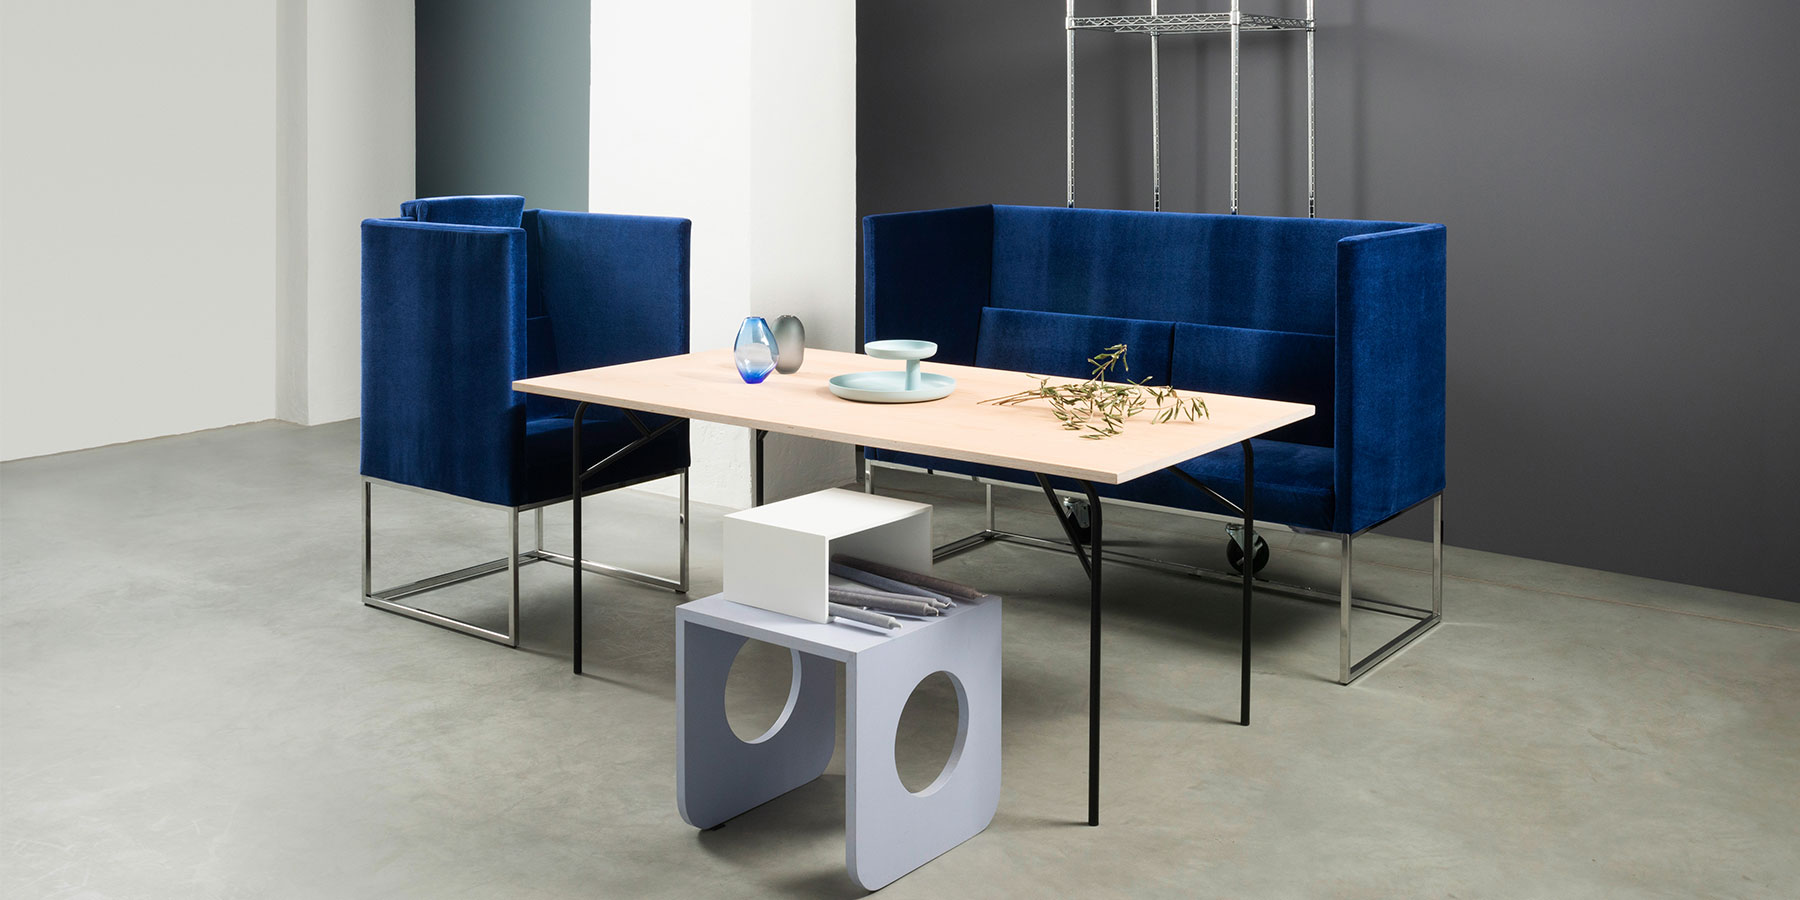 Ein Sessel und eine Sitzbank mit jeweils hohen Rückenlehnen und Seiten in einem sehr dunklem blau stehen um einen grazilen Esstisch mit einer Tischplatte in hellem Holz.